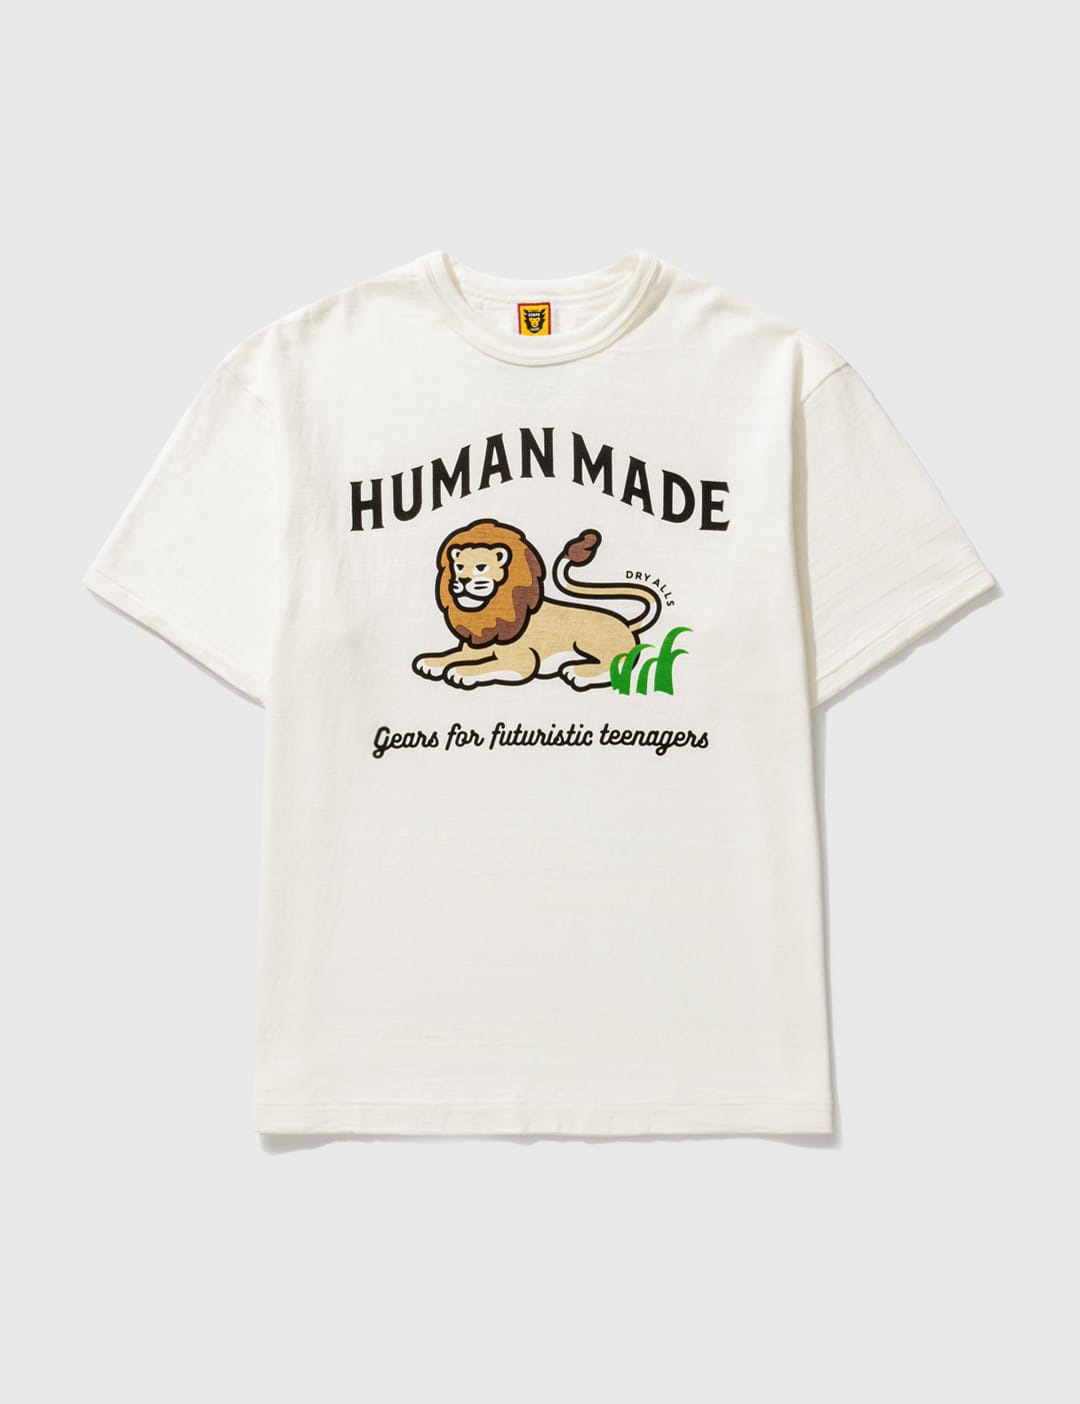 XLサイズ ヒューマンメイド Human made Tシャツ ライオン 香港限定